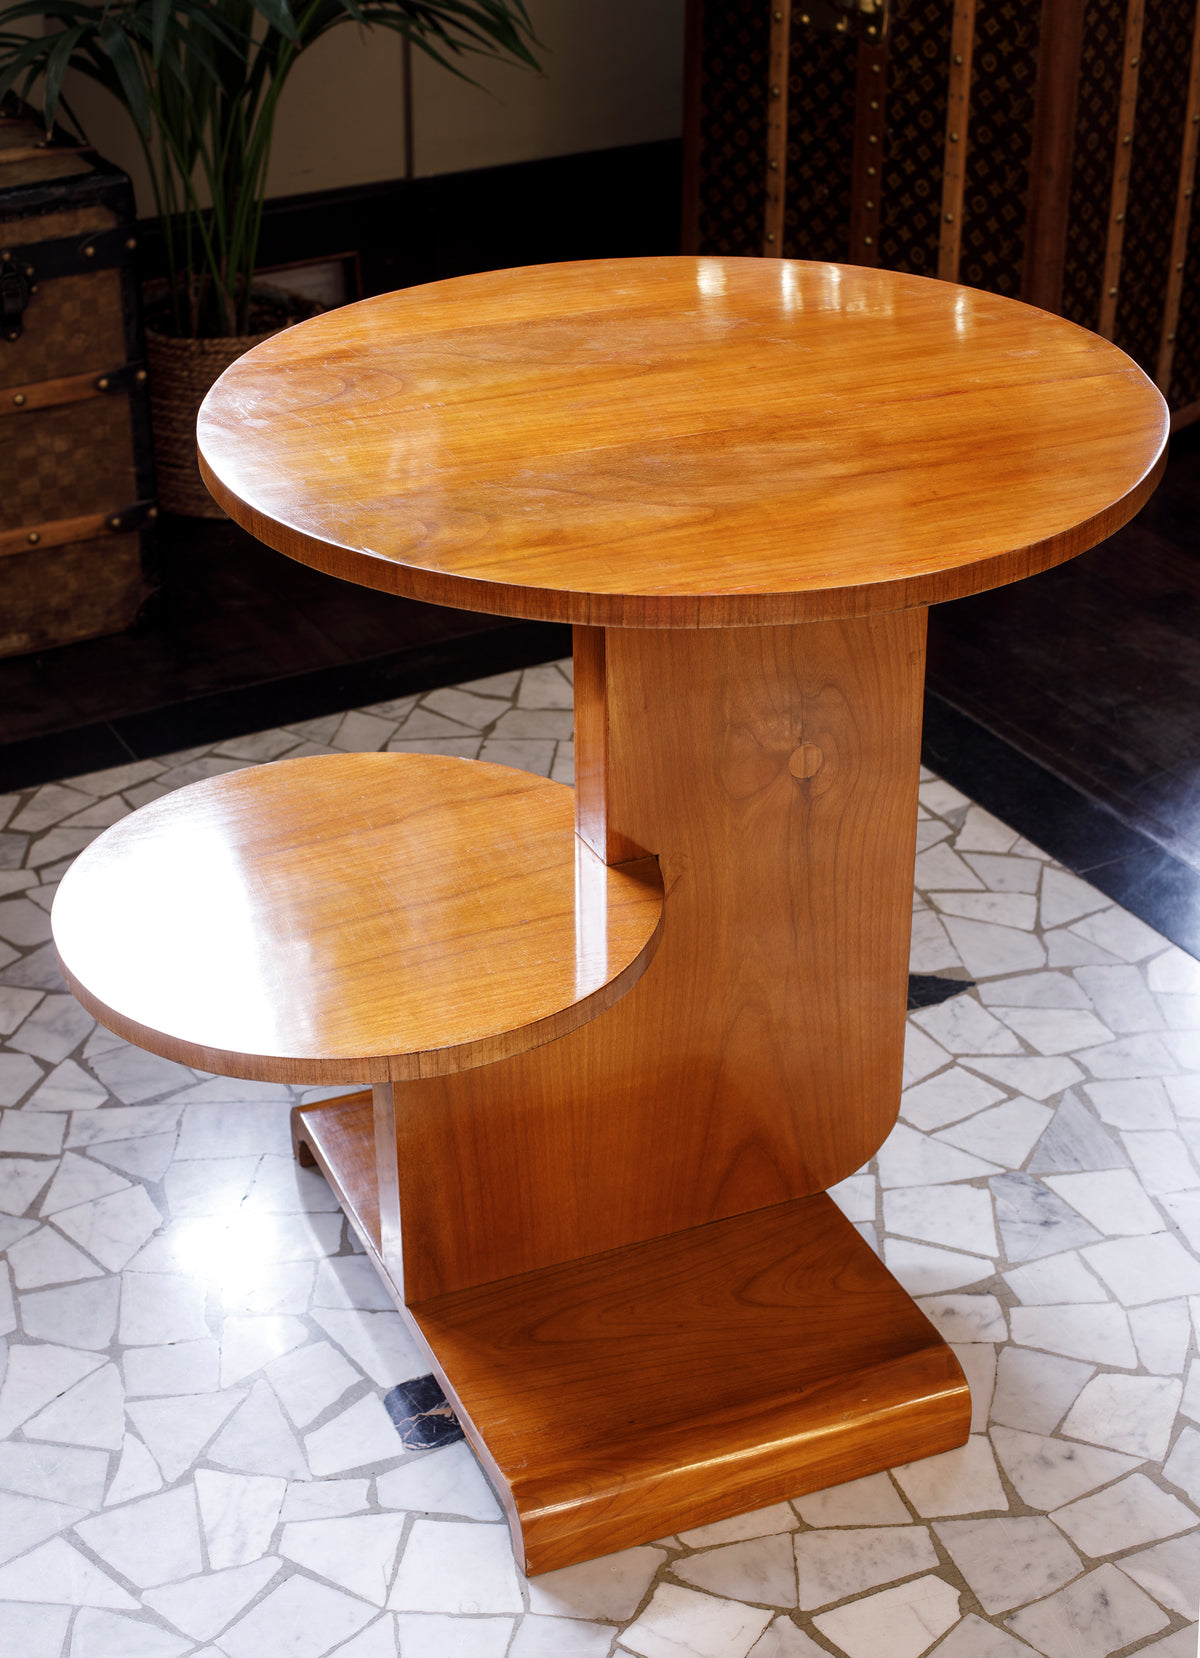 Tavolino tondo in ciliegio con due ripiani - 1930 - Cherry Circular Coffee Table